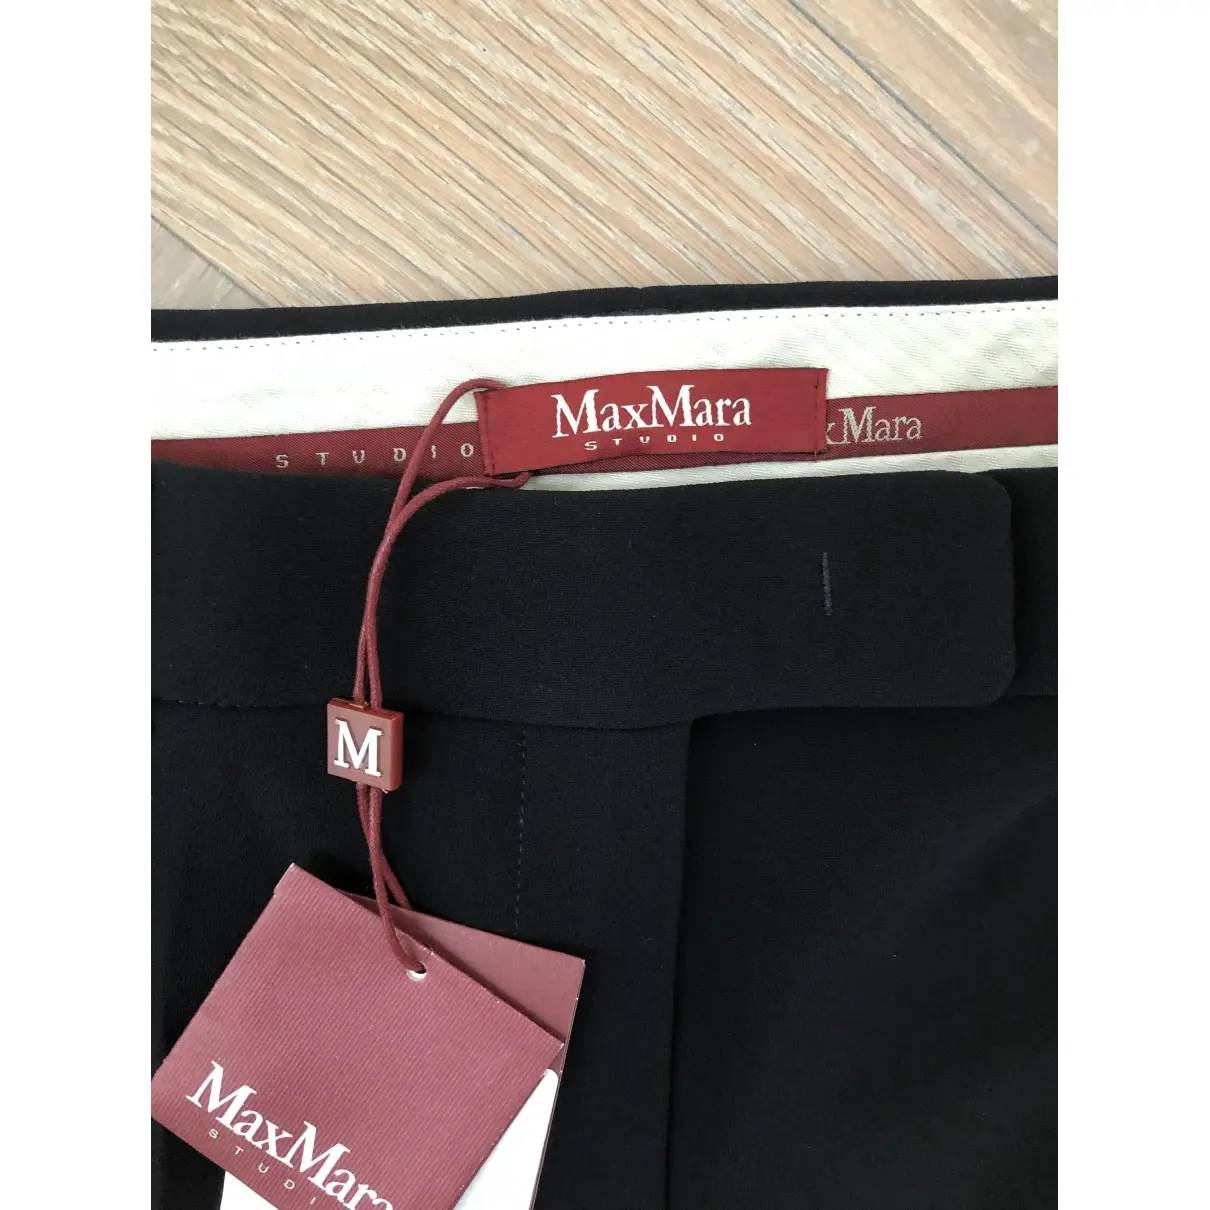 Buy Max Mara Studio Trousers online